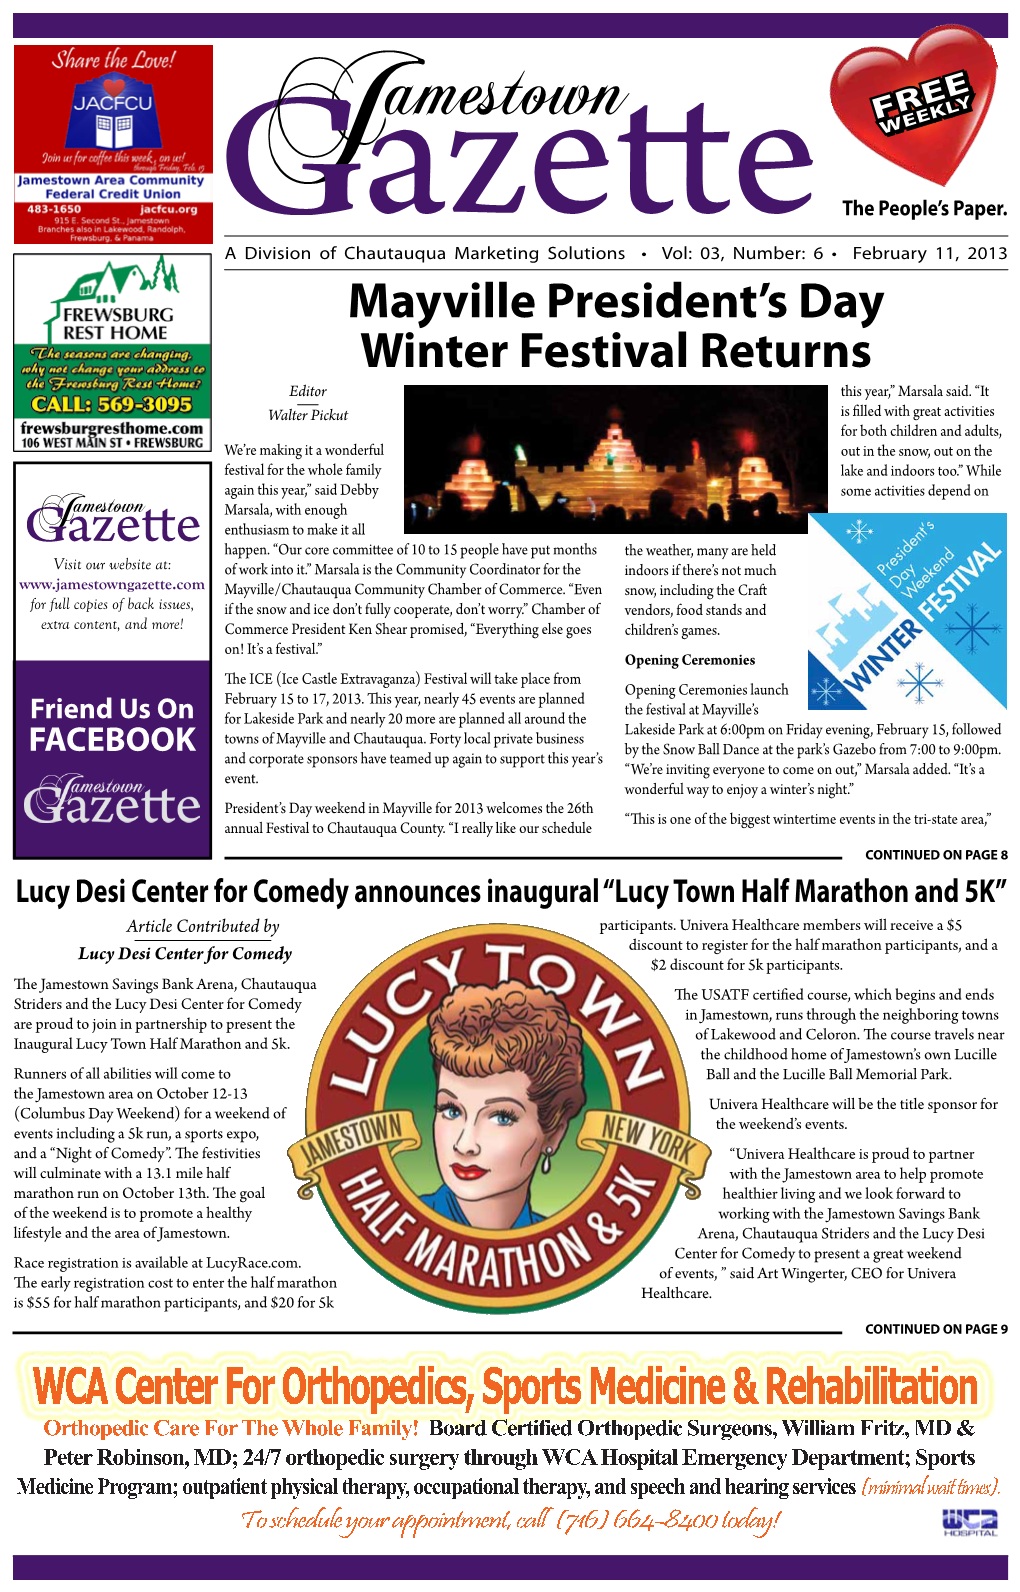 Mayville President's Day Winter Festival Returns